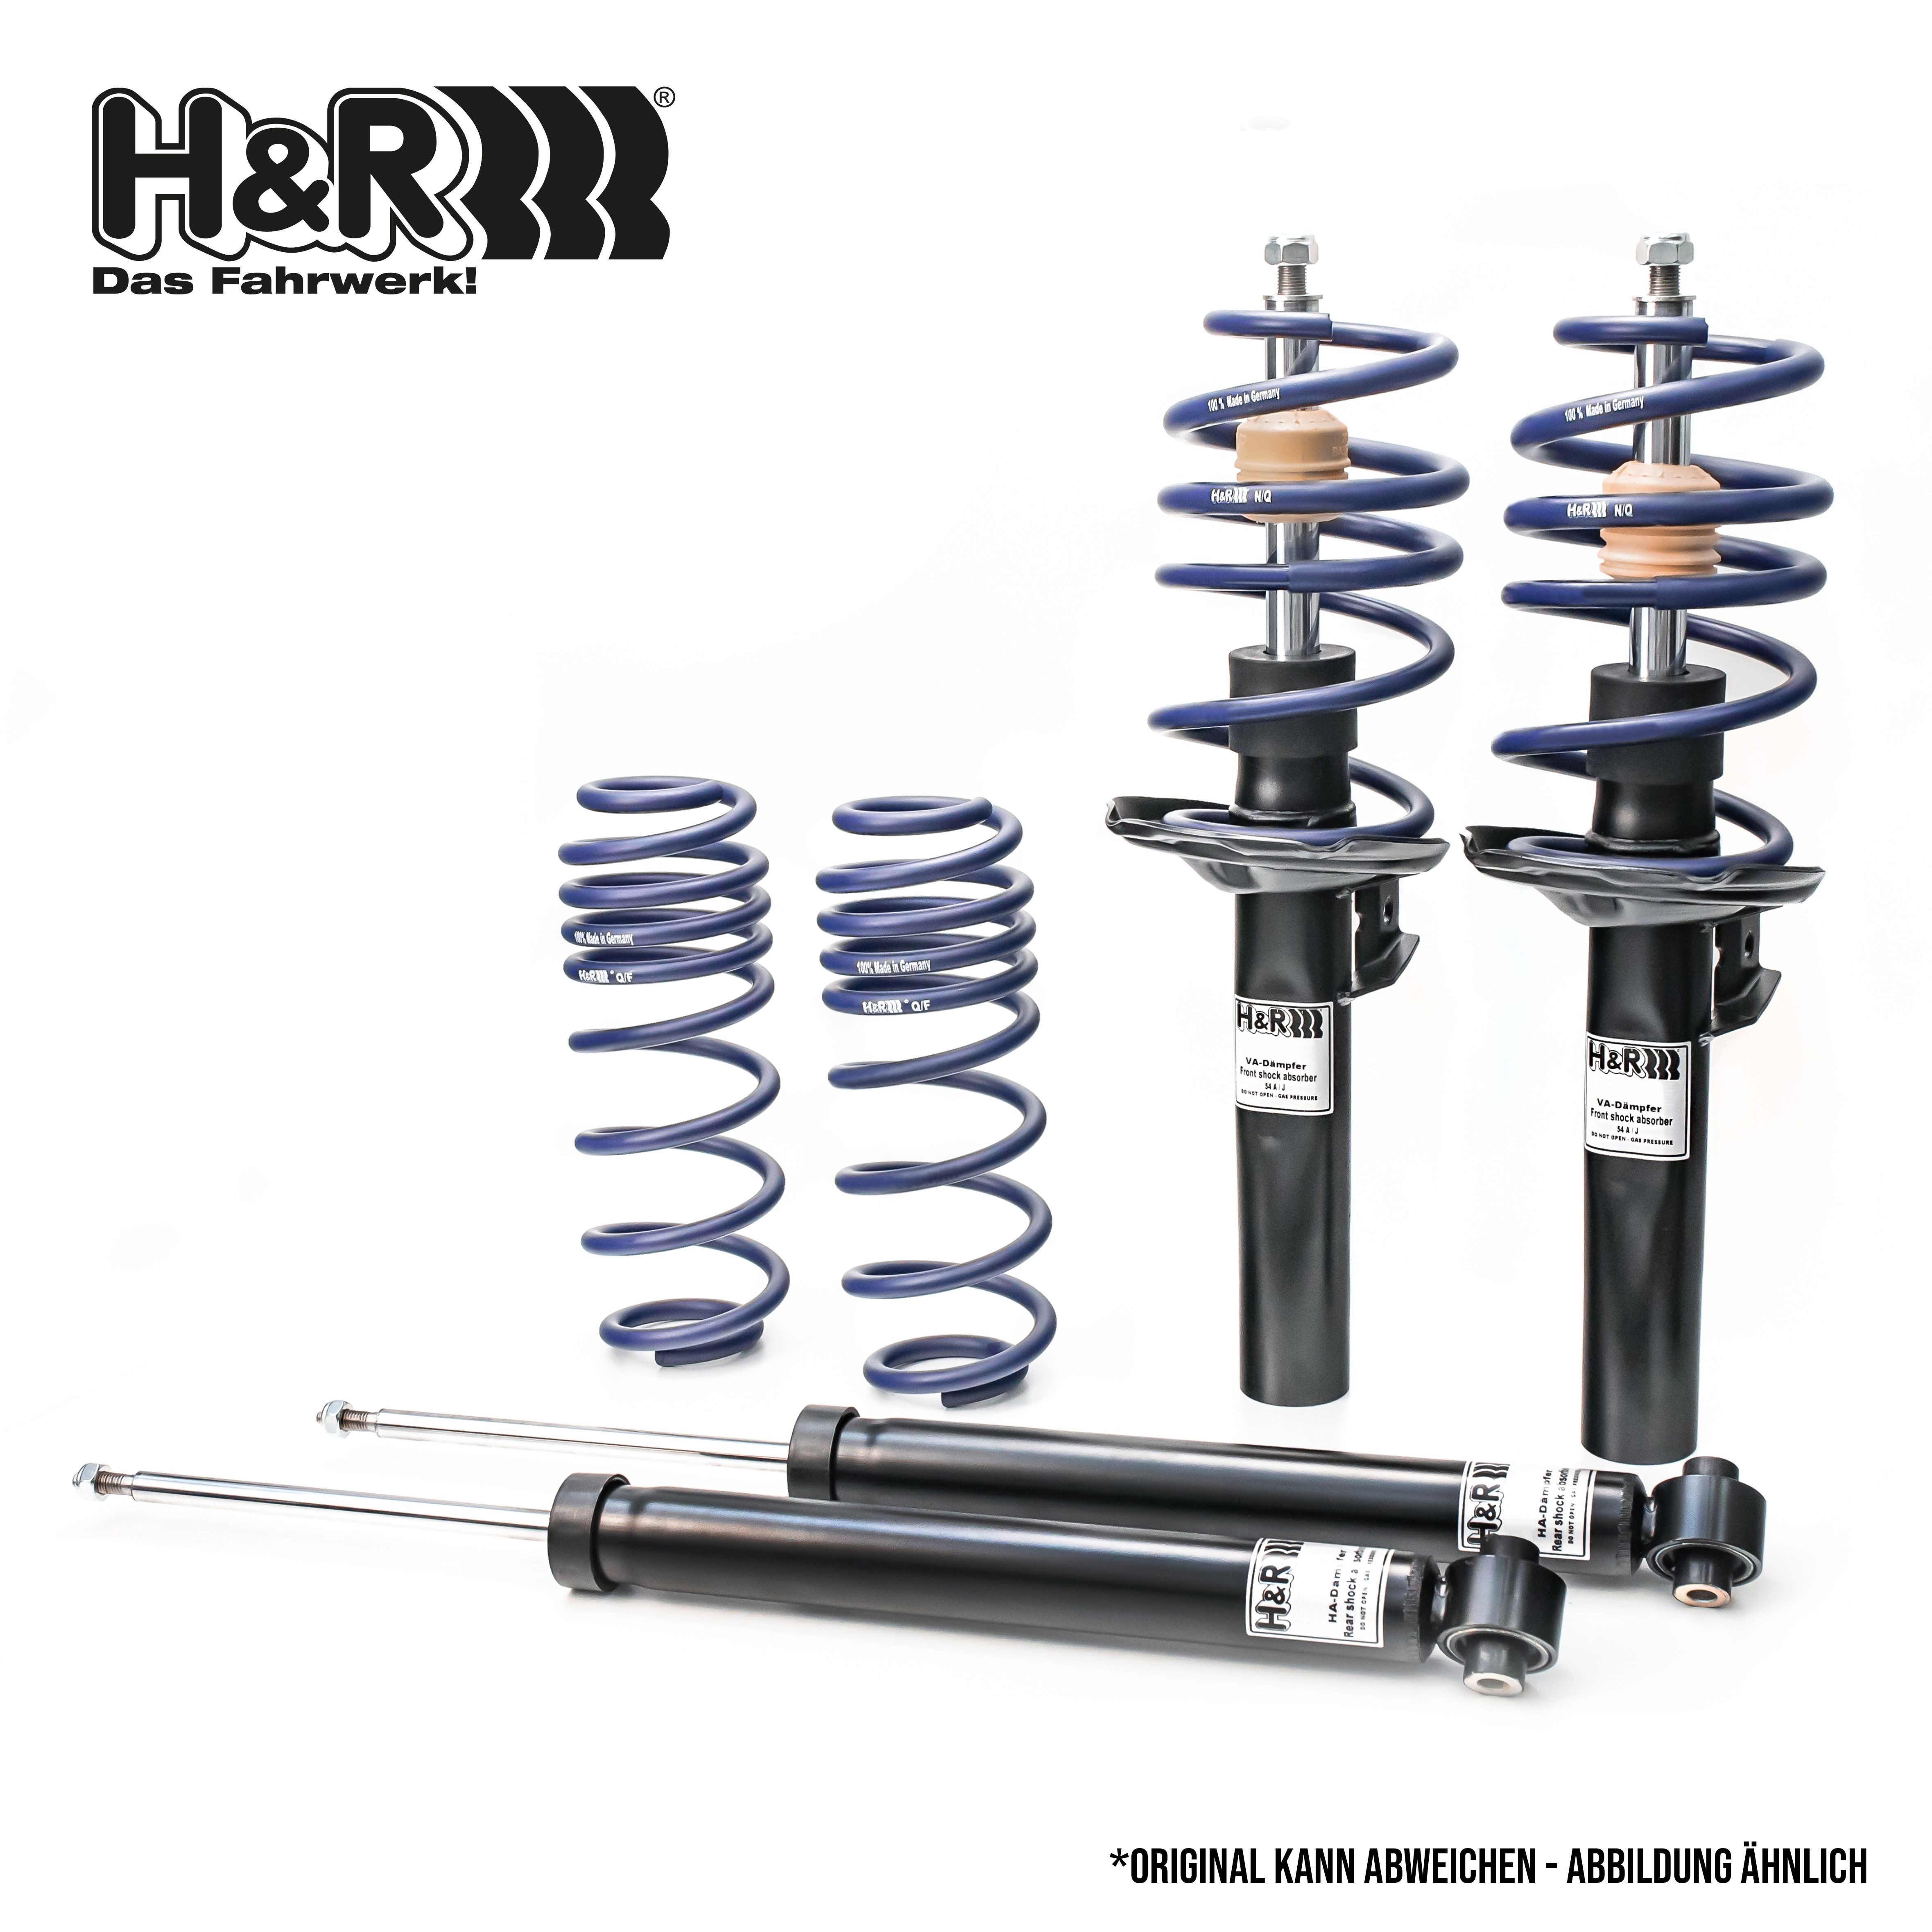 H&R Shock absorber set 40538-2 buy